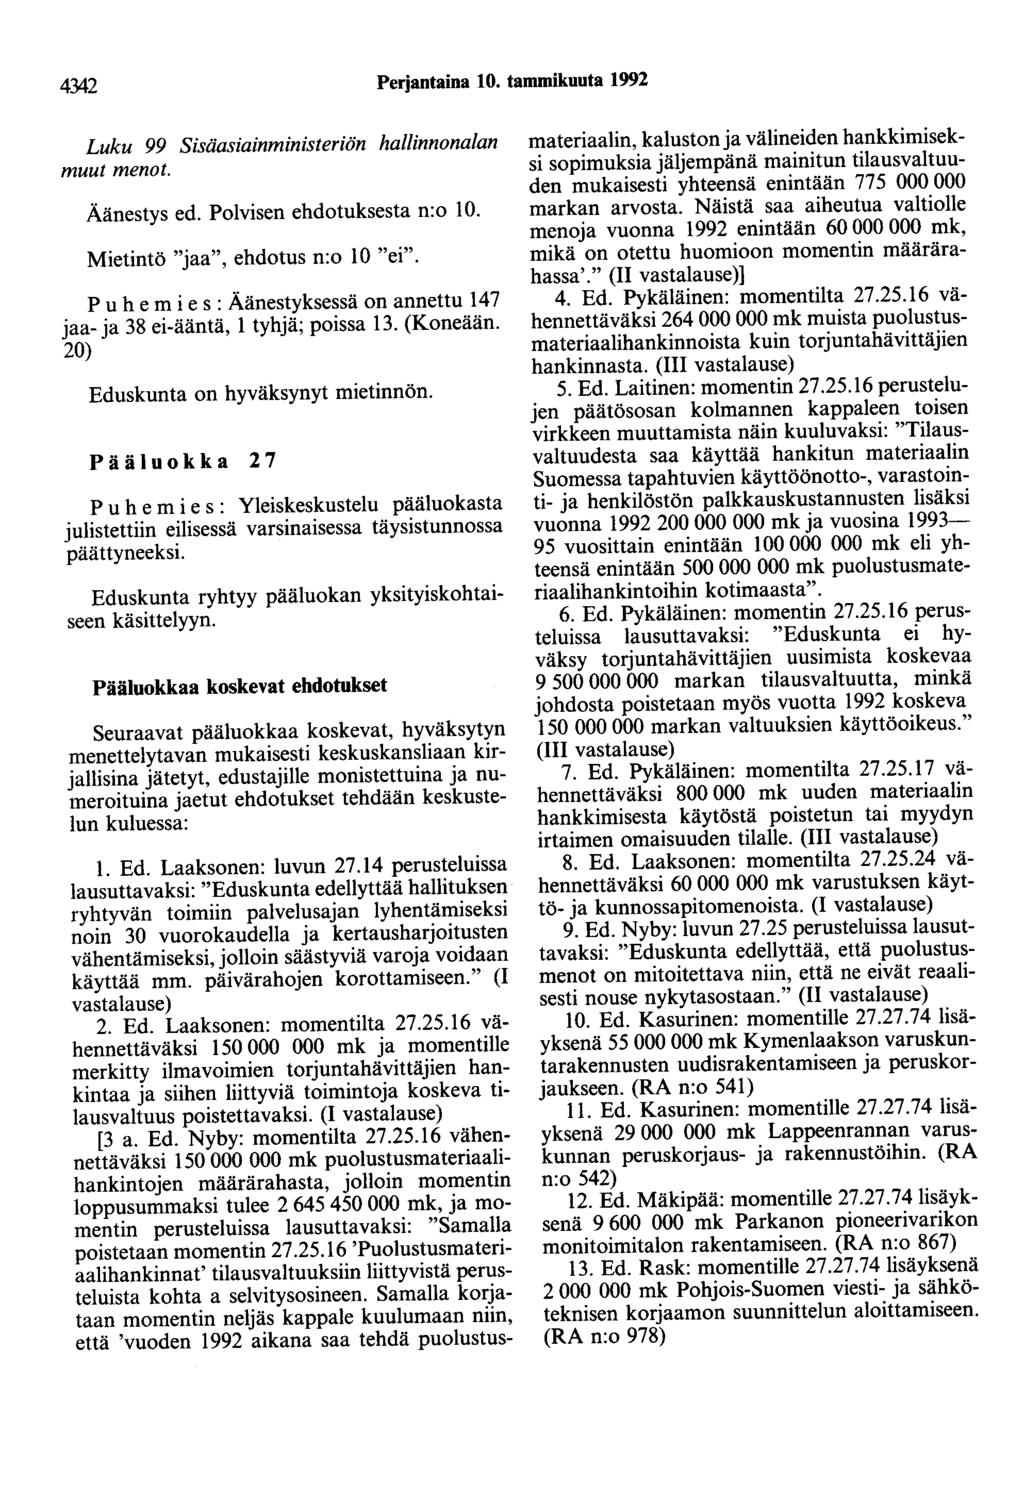 4342 Perjantaina 10. tammikuuta 1992 Luku 99 Sisäasiainministeriön hallinnonalan muut menot. Äänestys ed. Polvisen ehdotuksesta n:o 10. Mietintö "jaa", ehdotus n:o 10 "ei".